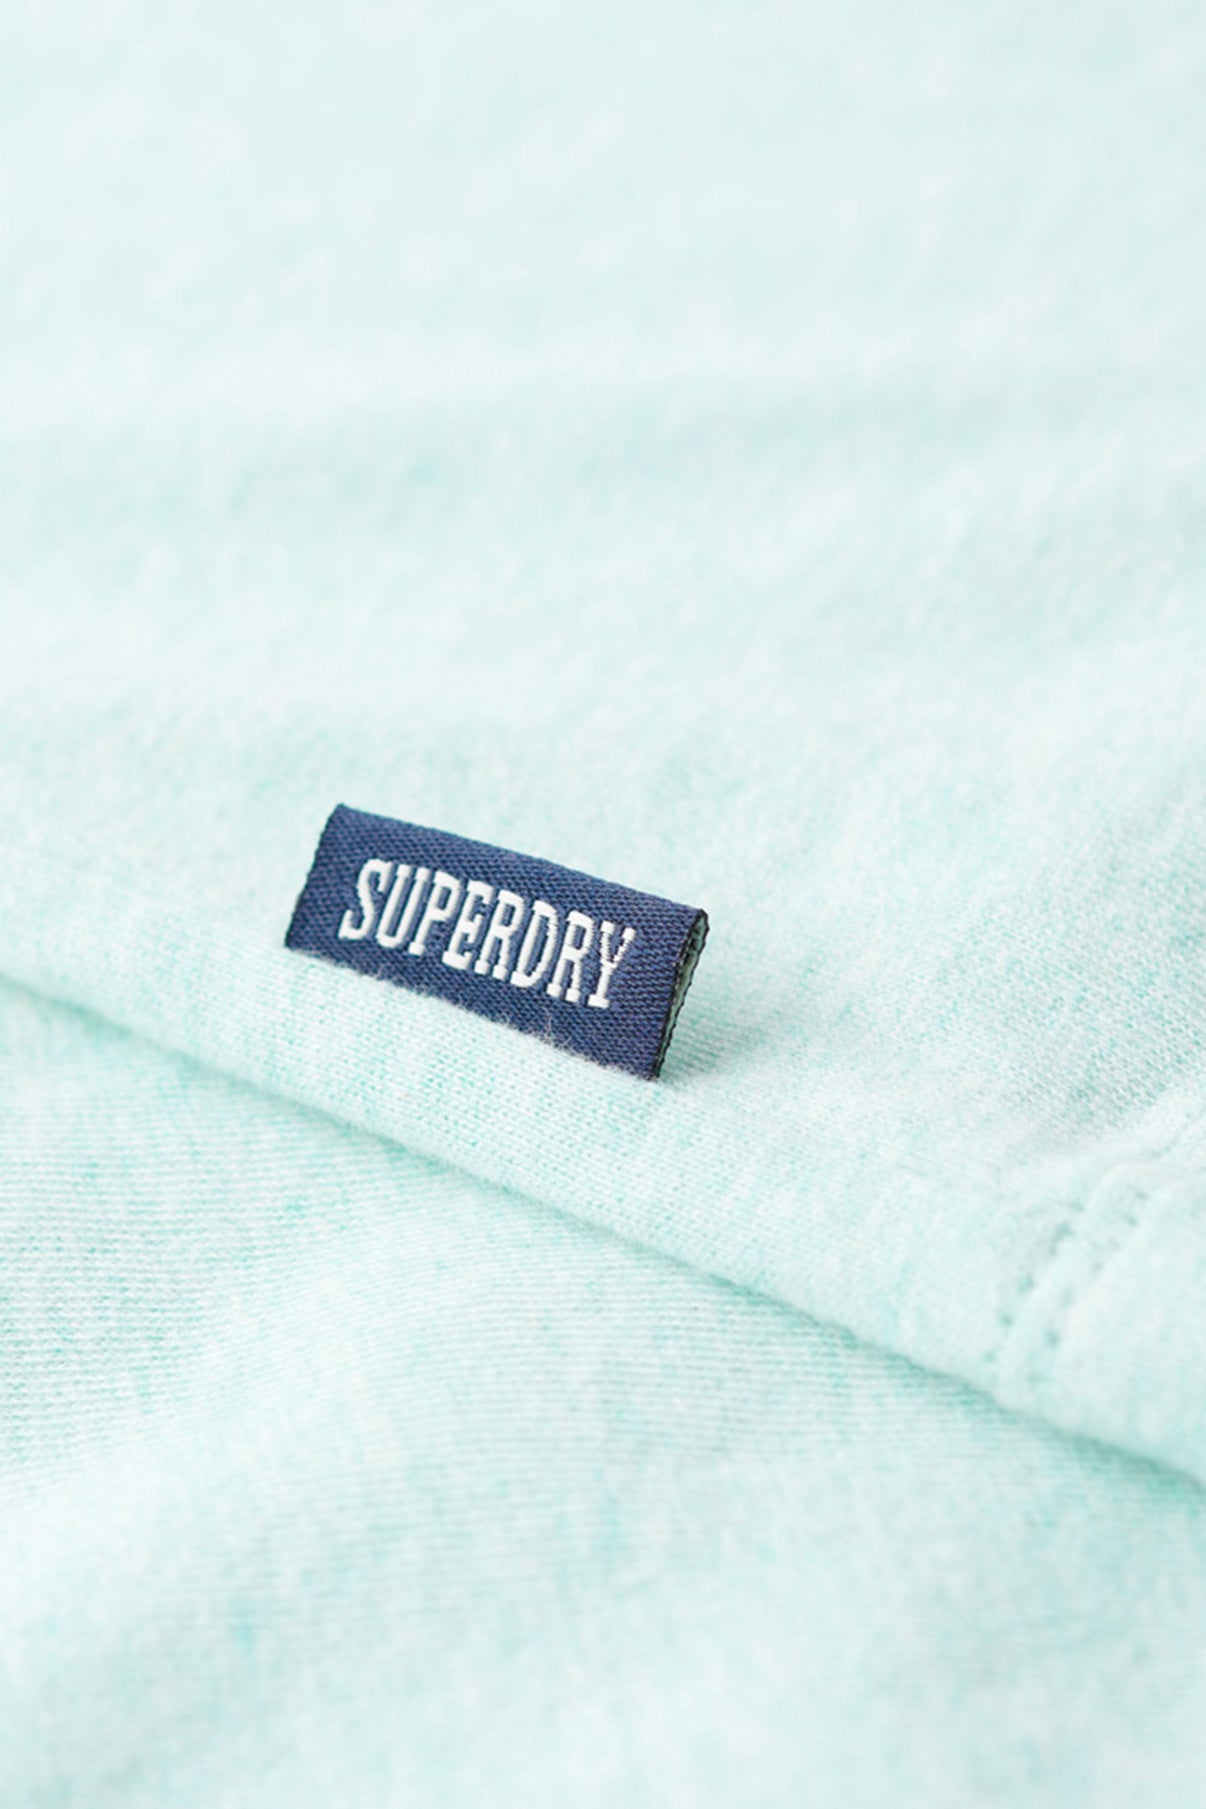 SUPERDRY T-Shirt Vintage Logo EMB